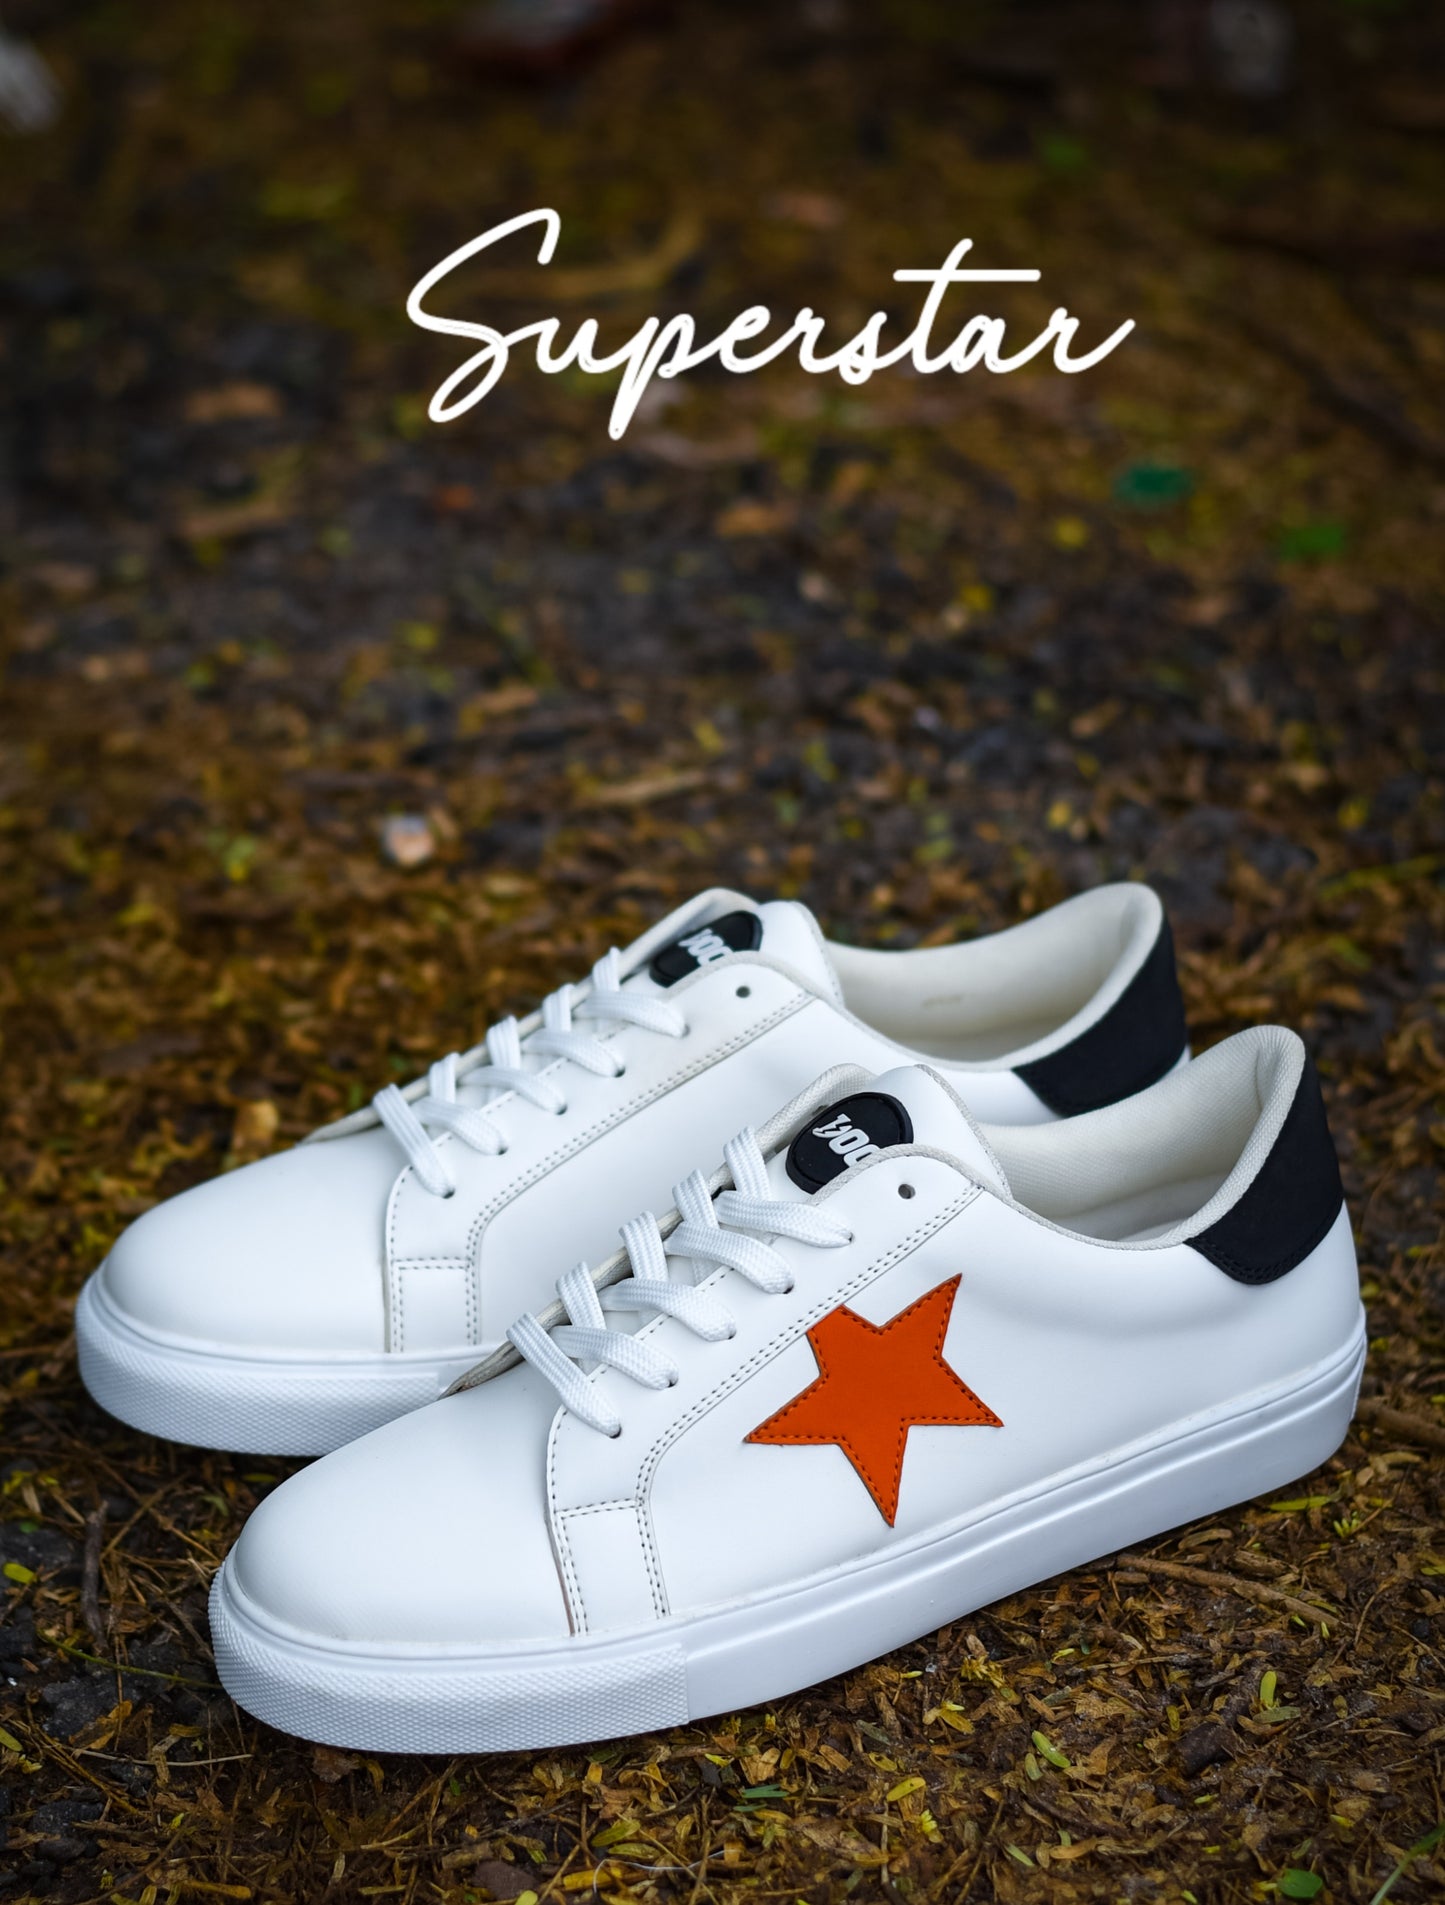 Superstar LT / White Orange